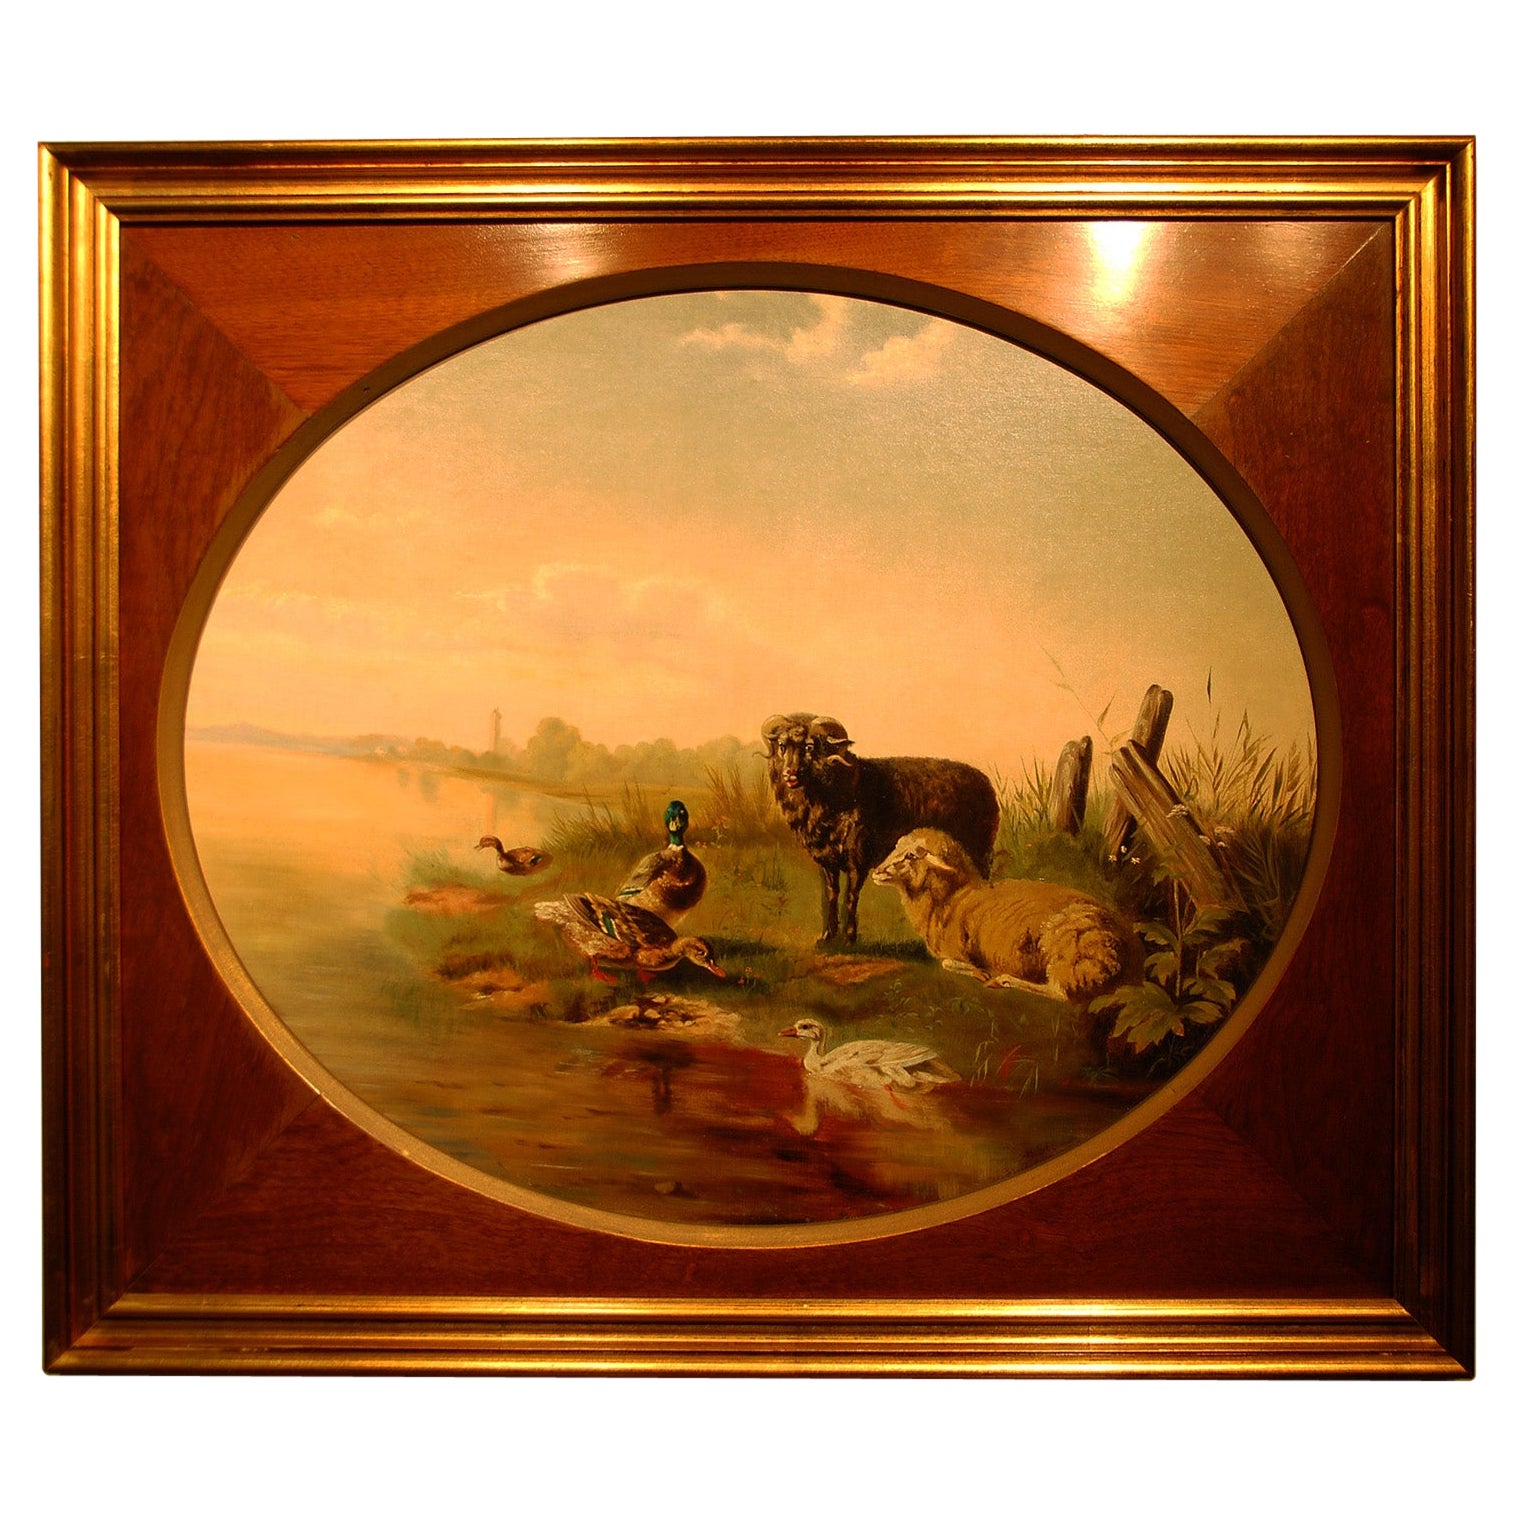 Huile sur toile originale du XIXe siècle anglaise ou néerlandaise « At the Water's Edge » (Au bord de l'eau)